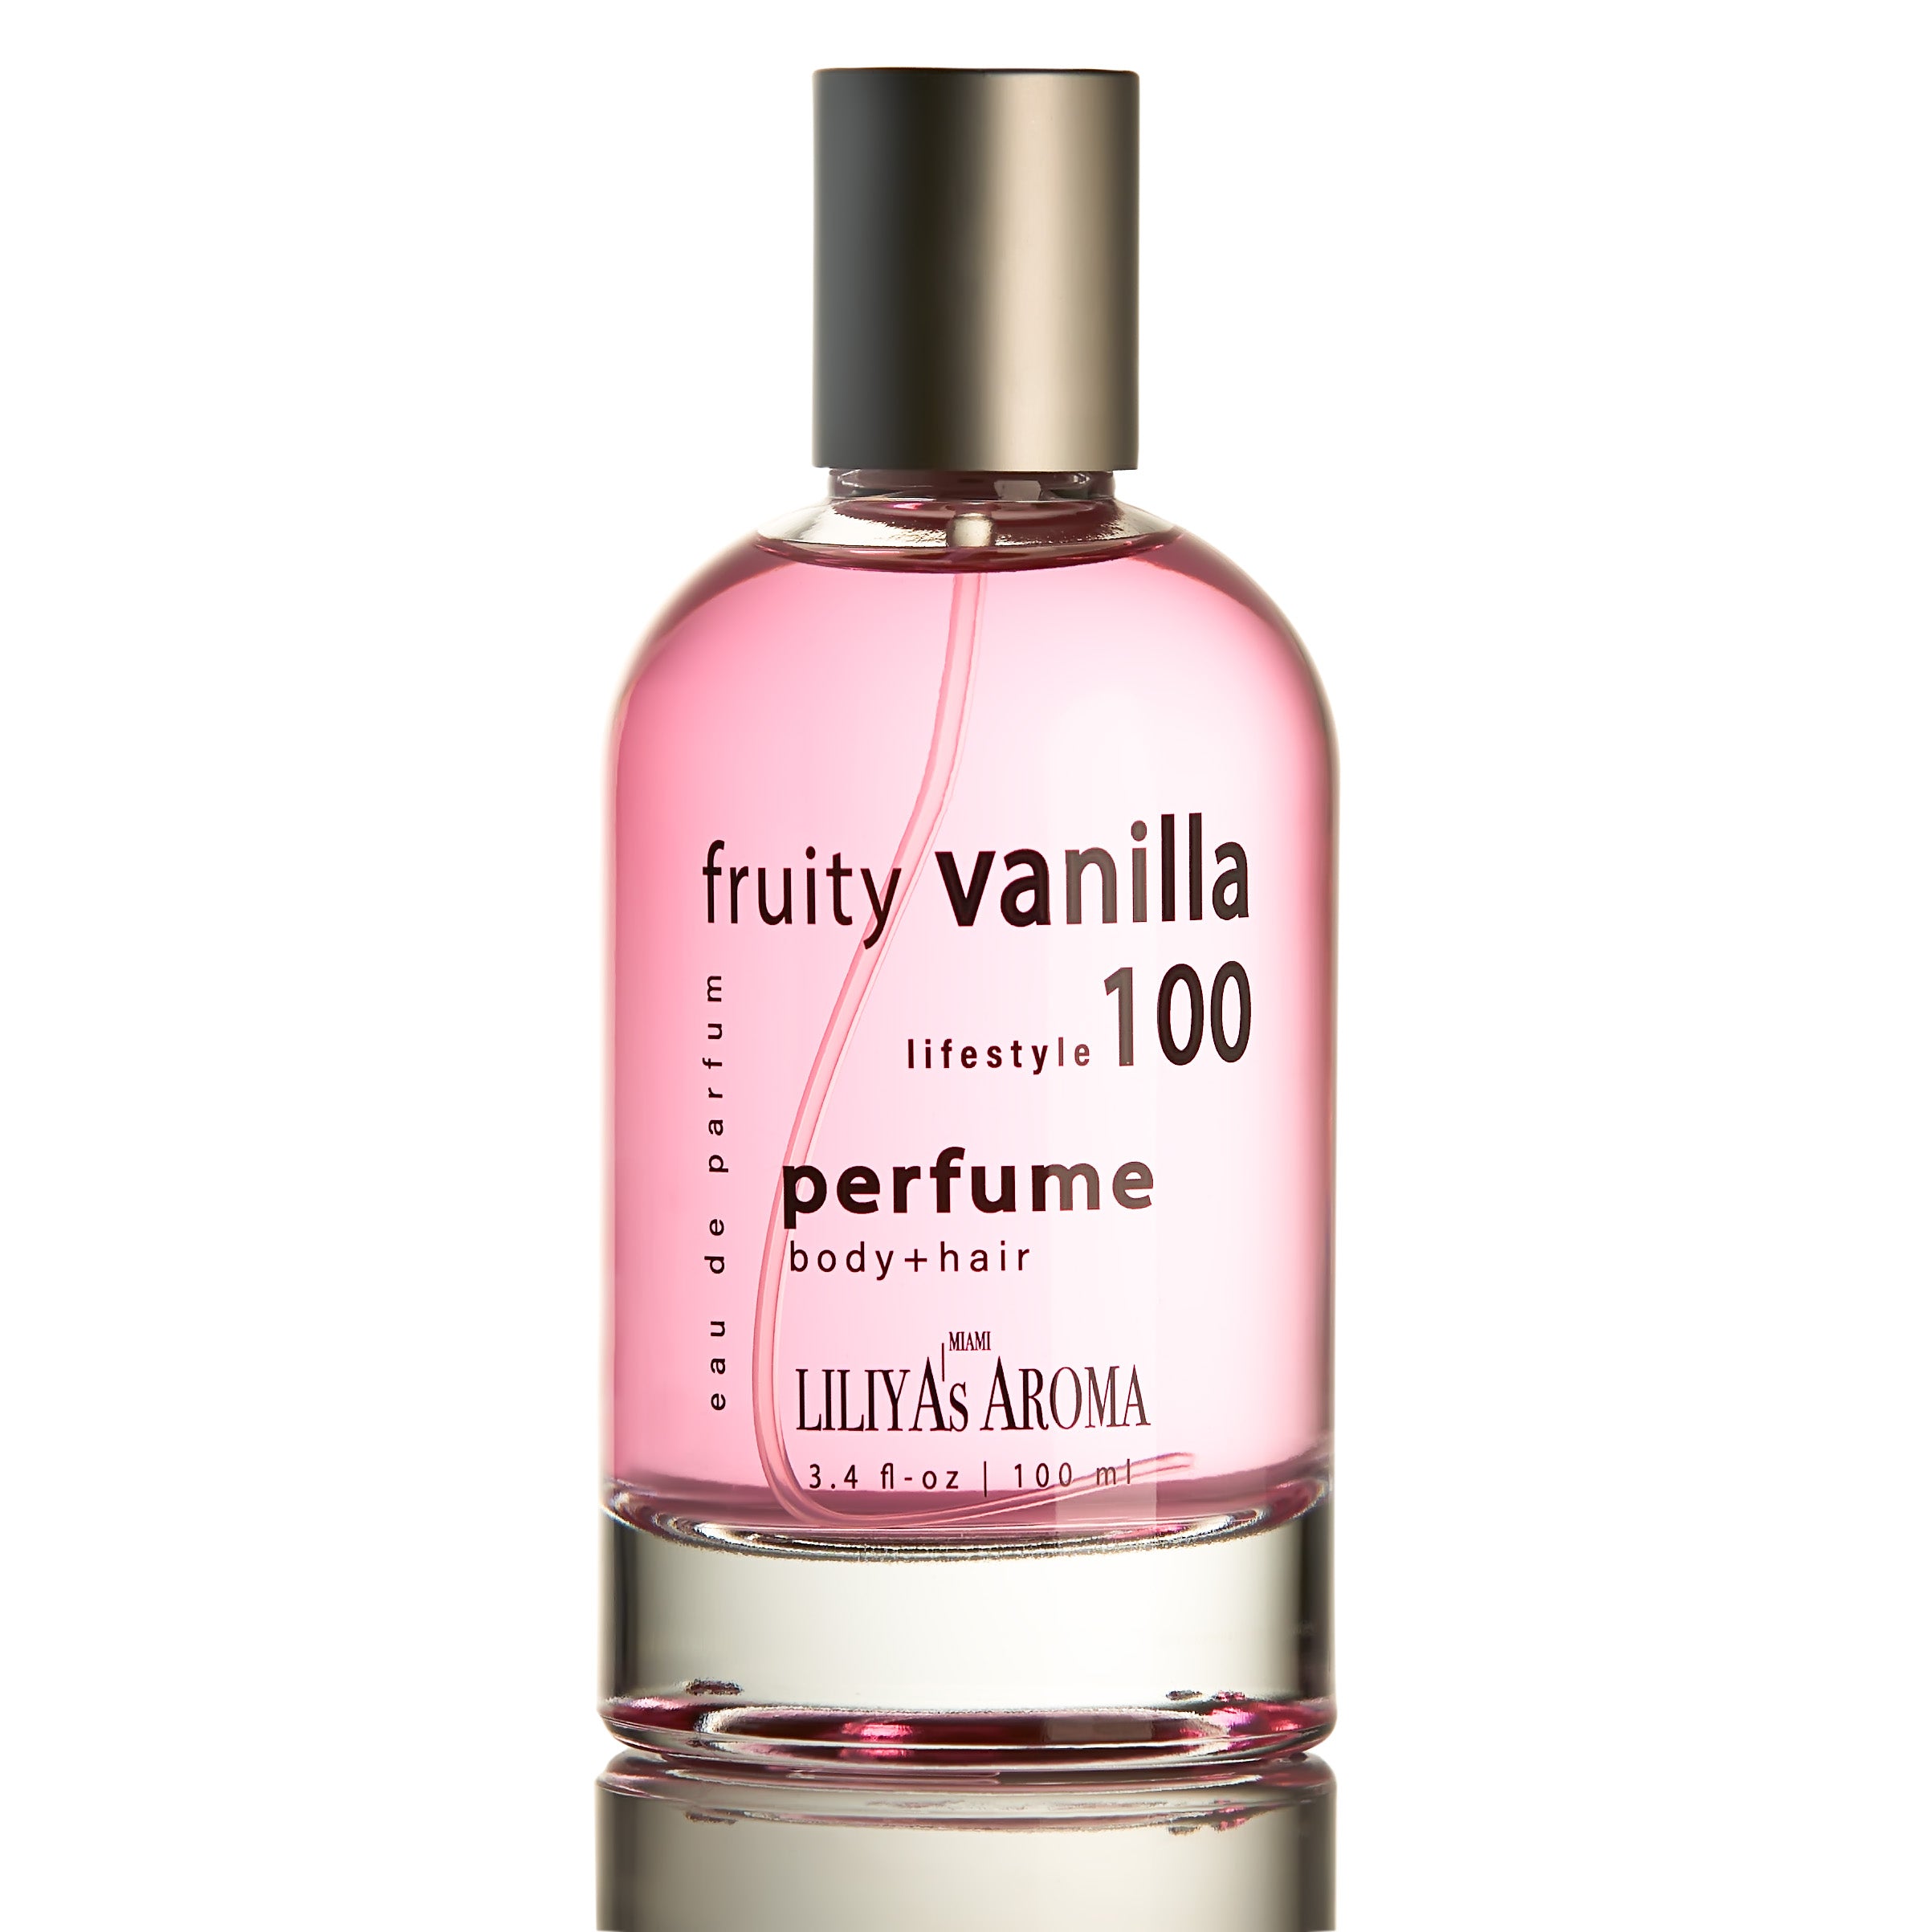 Timeless Vanilla - Fragrance Oil